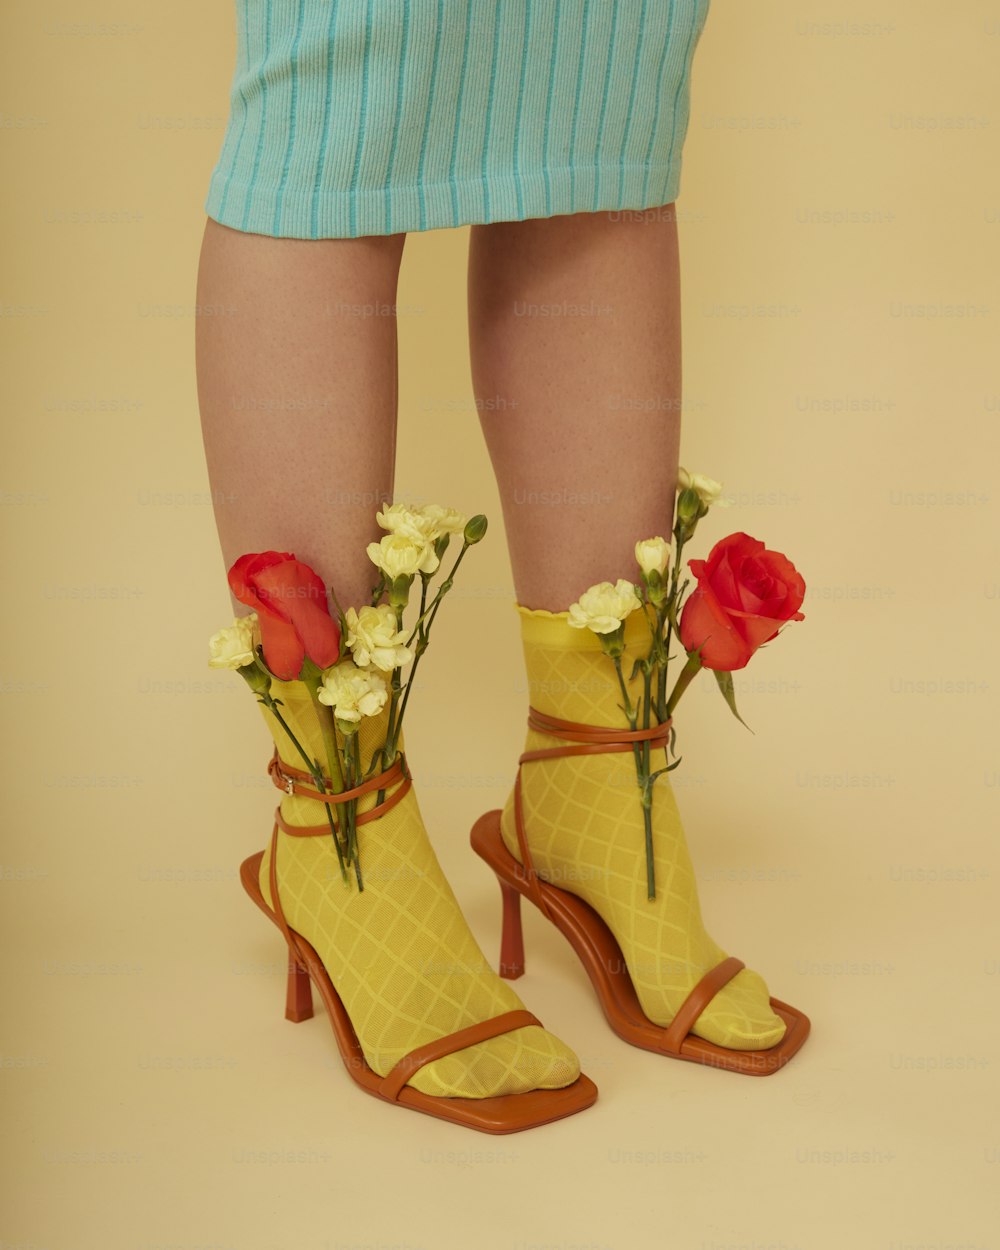 les jambes d’une femme portant des chaussures jaunes avec des fleurs